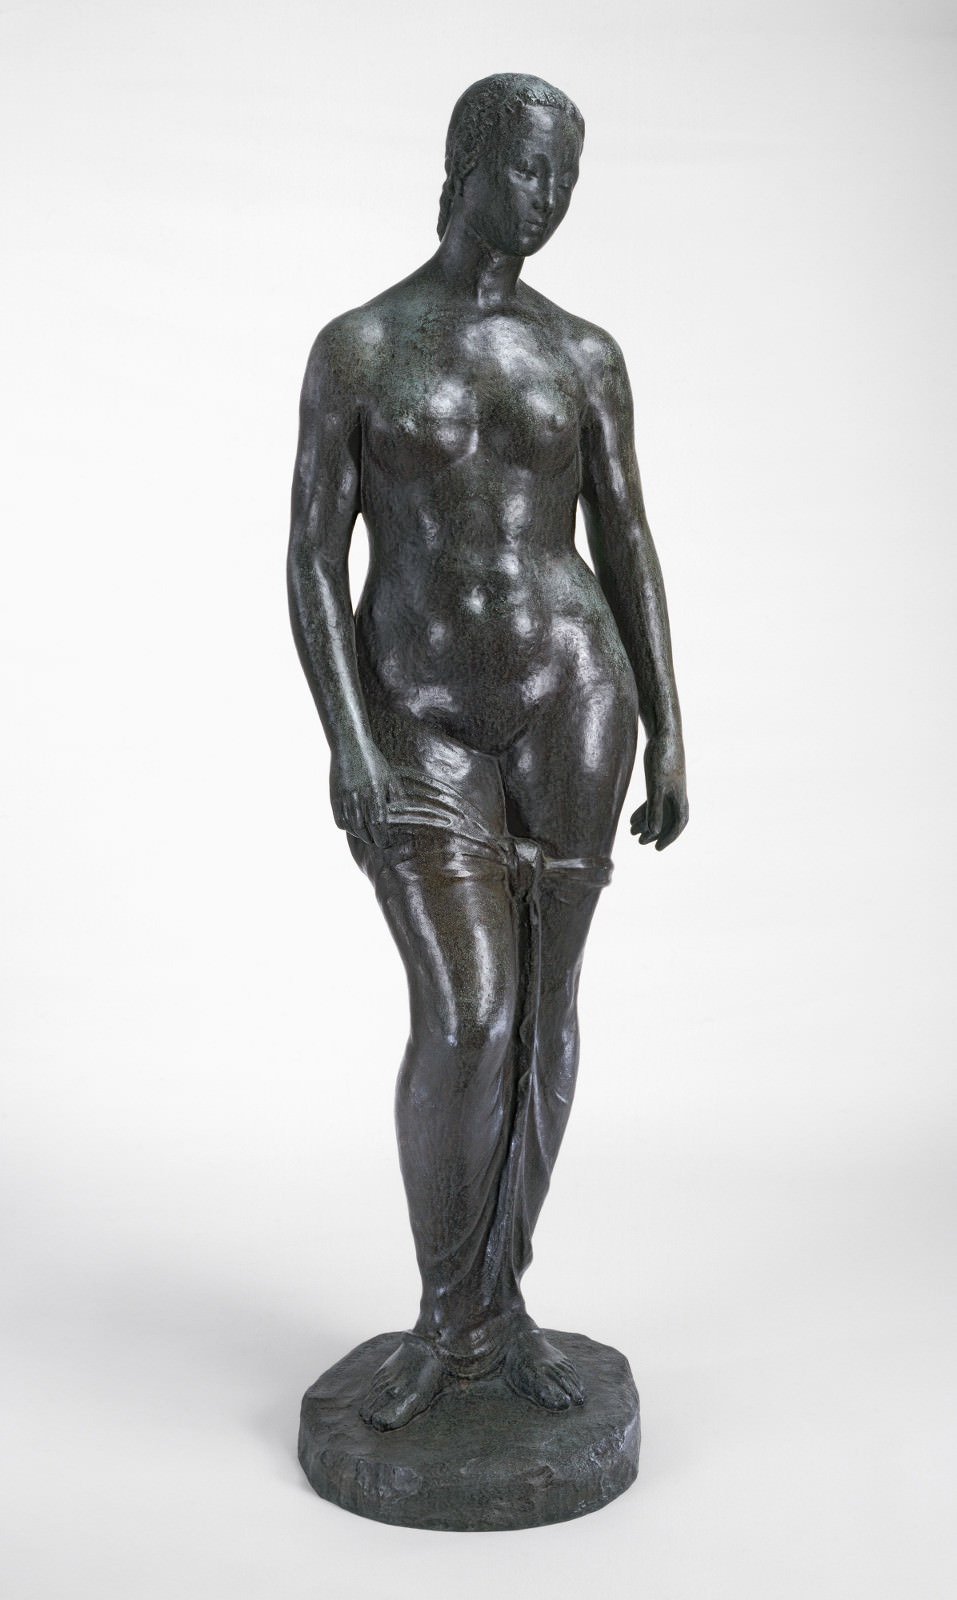 Σύκο.. 3 - Μόνιμη άνθρωπος, Wilhelm Lehmbruck, 1910, Χάλκινο, 191.2 x 54 x 39.9 cm. Εθνική Γκαλερί τέχνης, Ουάσιγκτον. Ailsa Mellon Ταμείο Bruce.